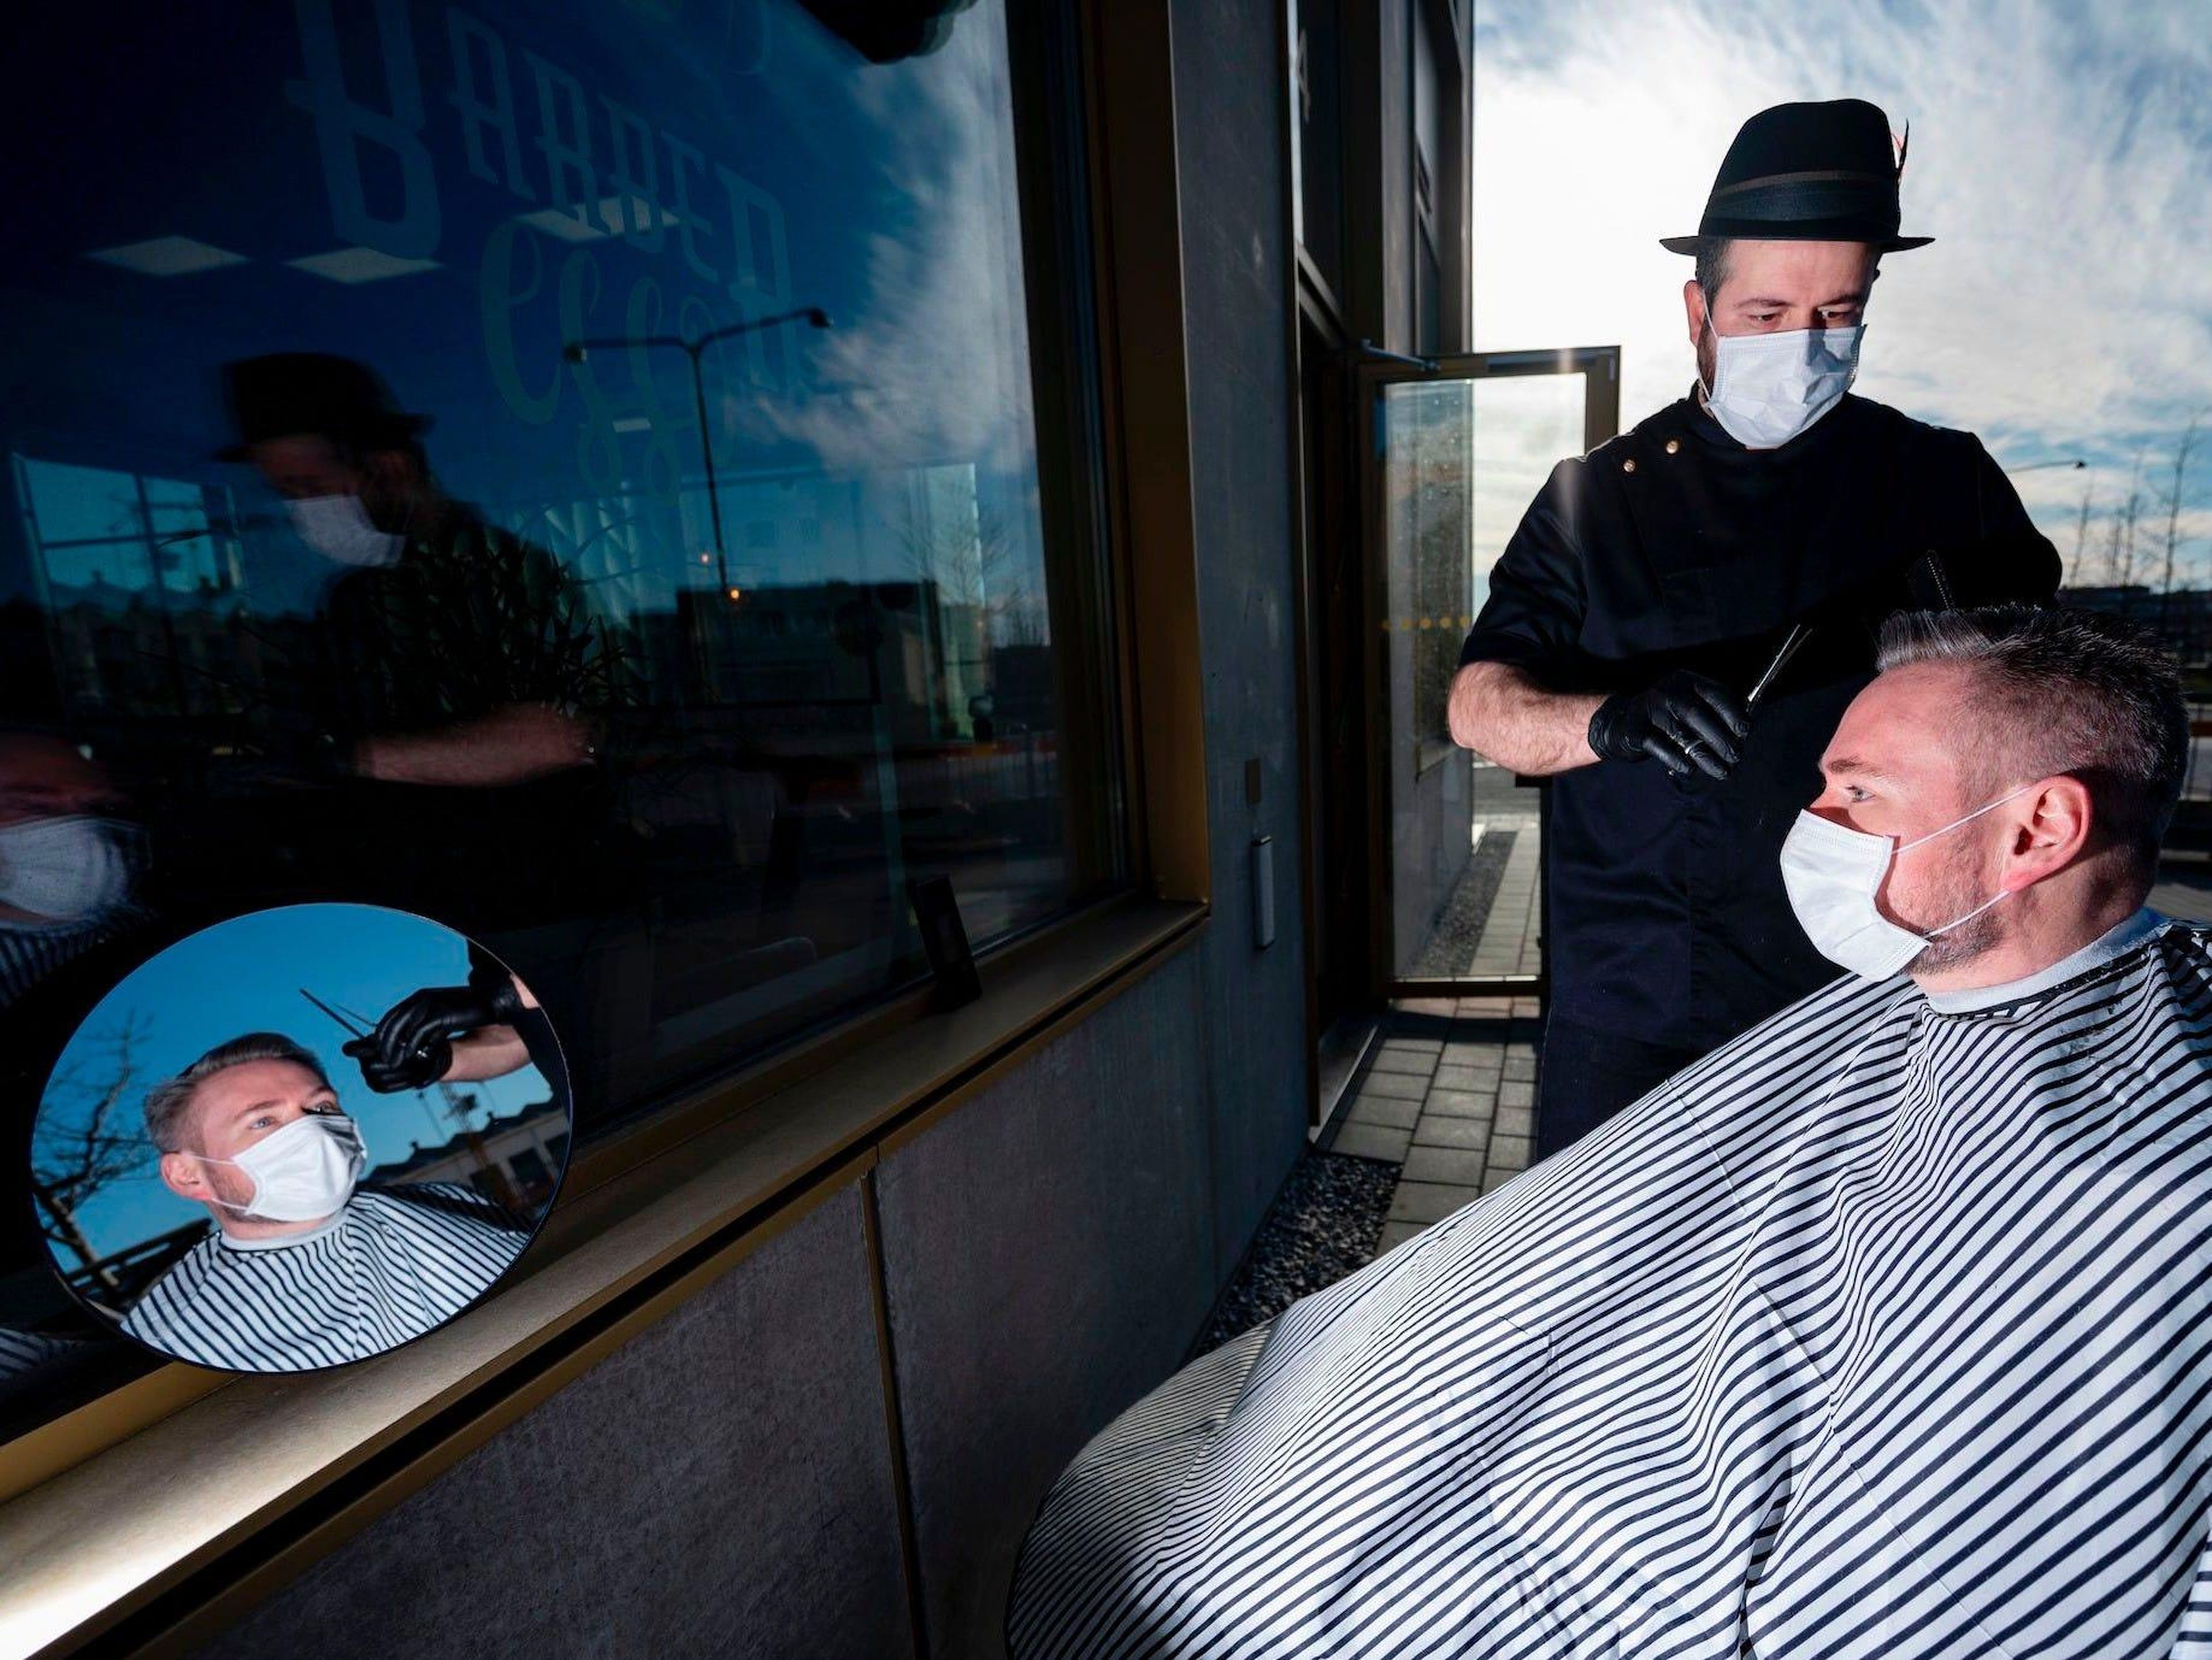 El peluquero Abed Khankan le corta el pelo a un cliente al aire libre como precaución en medio de la nueva pandemia de coronavirus, 17 de abril de 2020 en Malmo, Suecia.